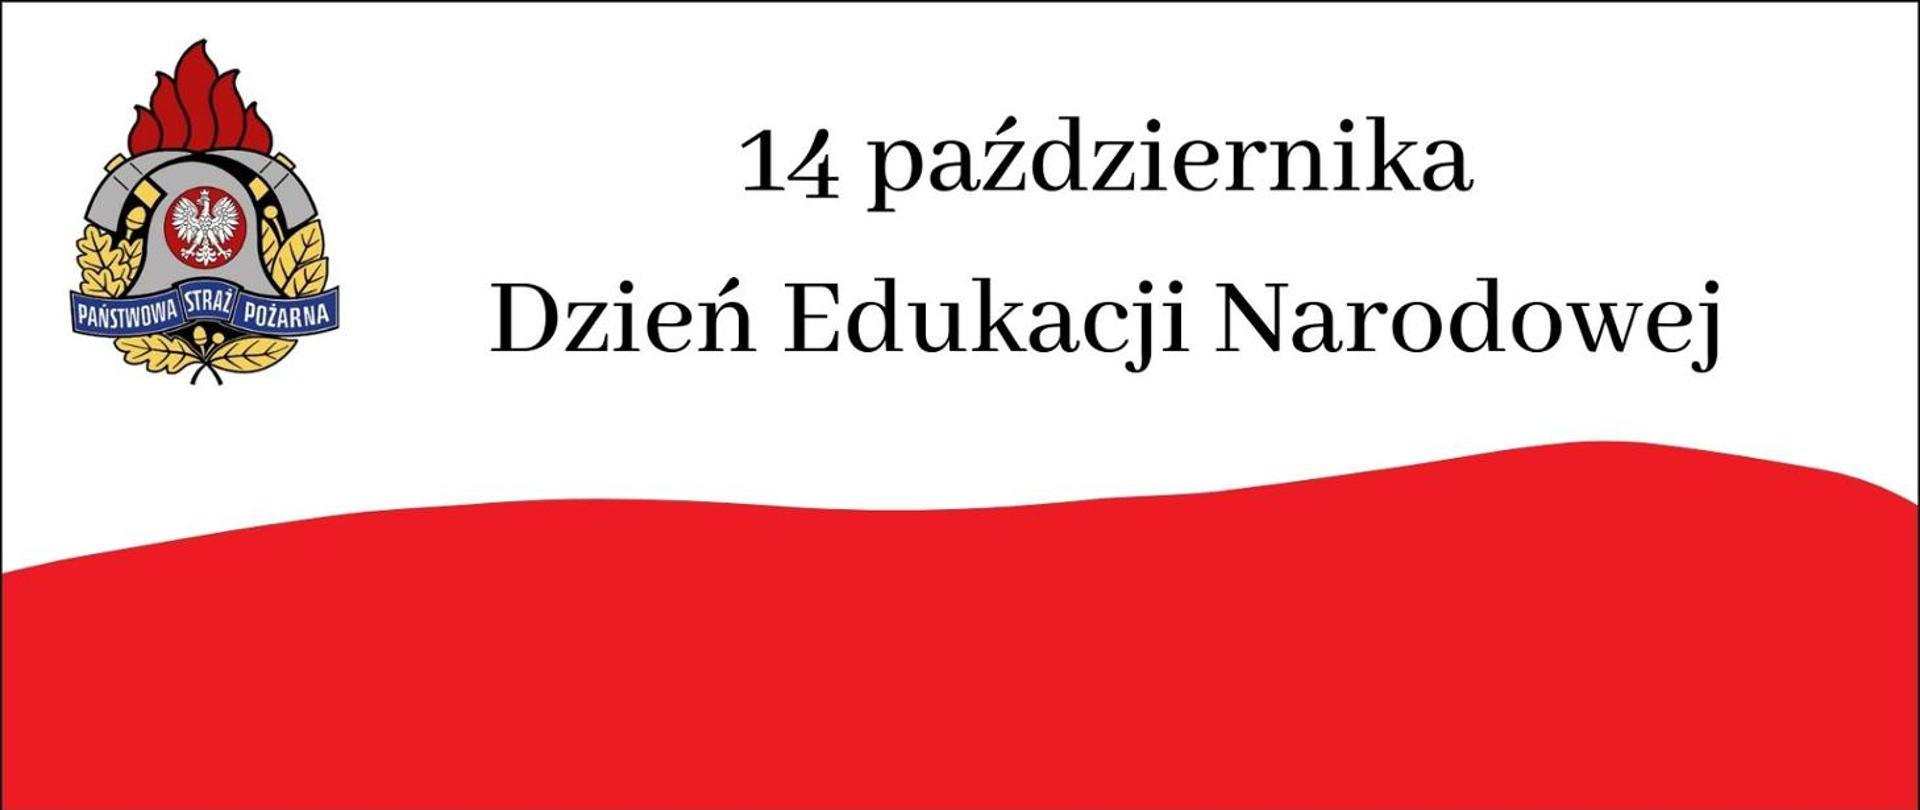 Napis 14 października Dzień Edukacji Narodowej na tle flagi biało czerwonej, logo psp w lewym górnym rogu. 